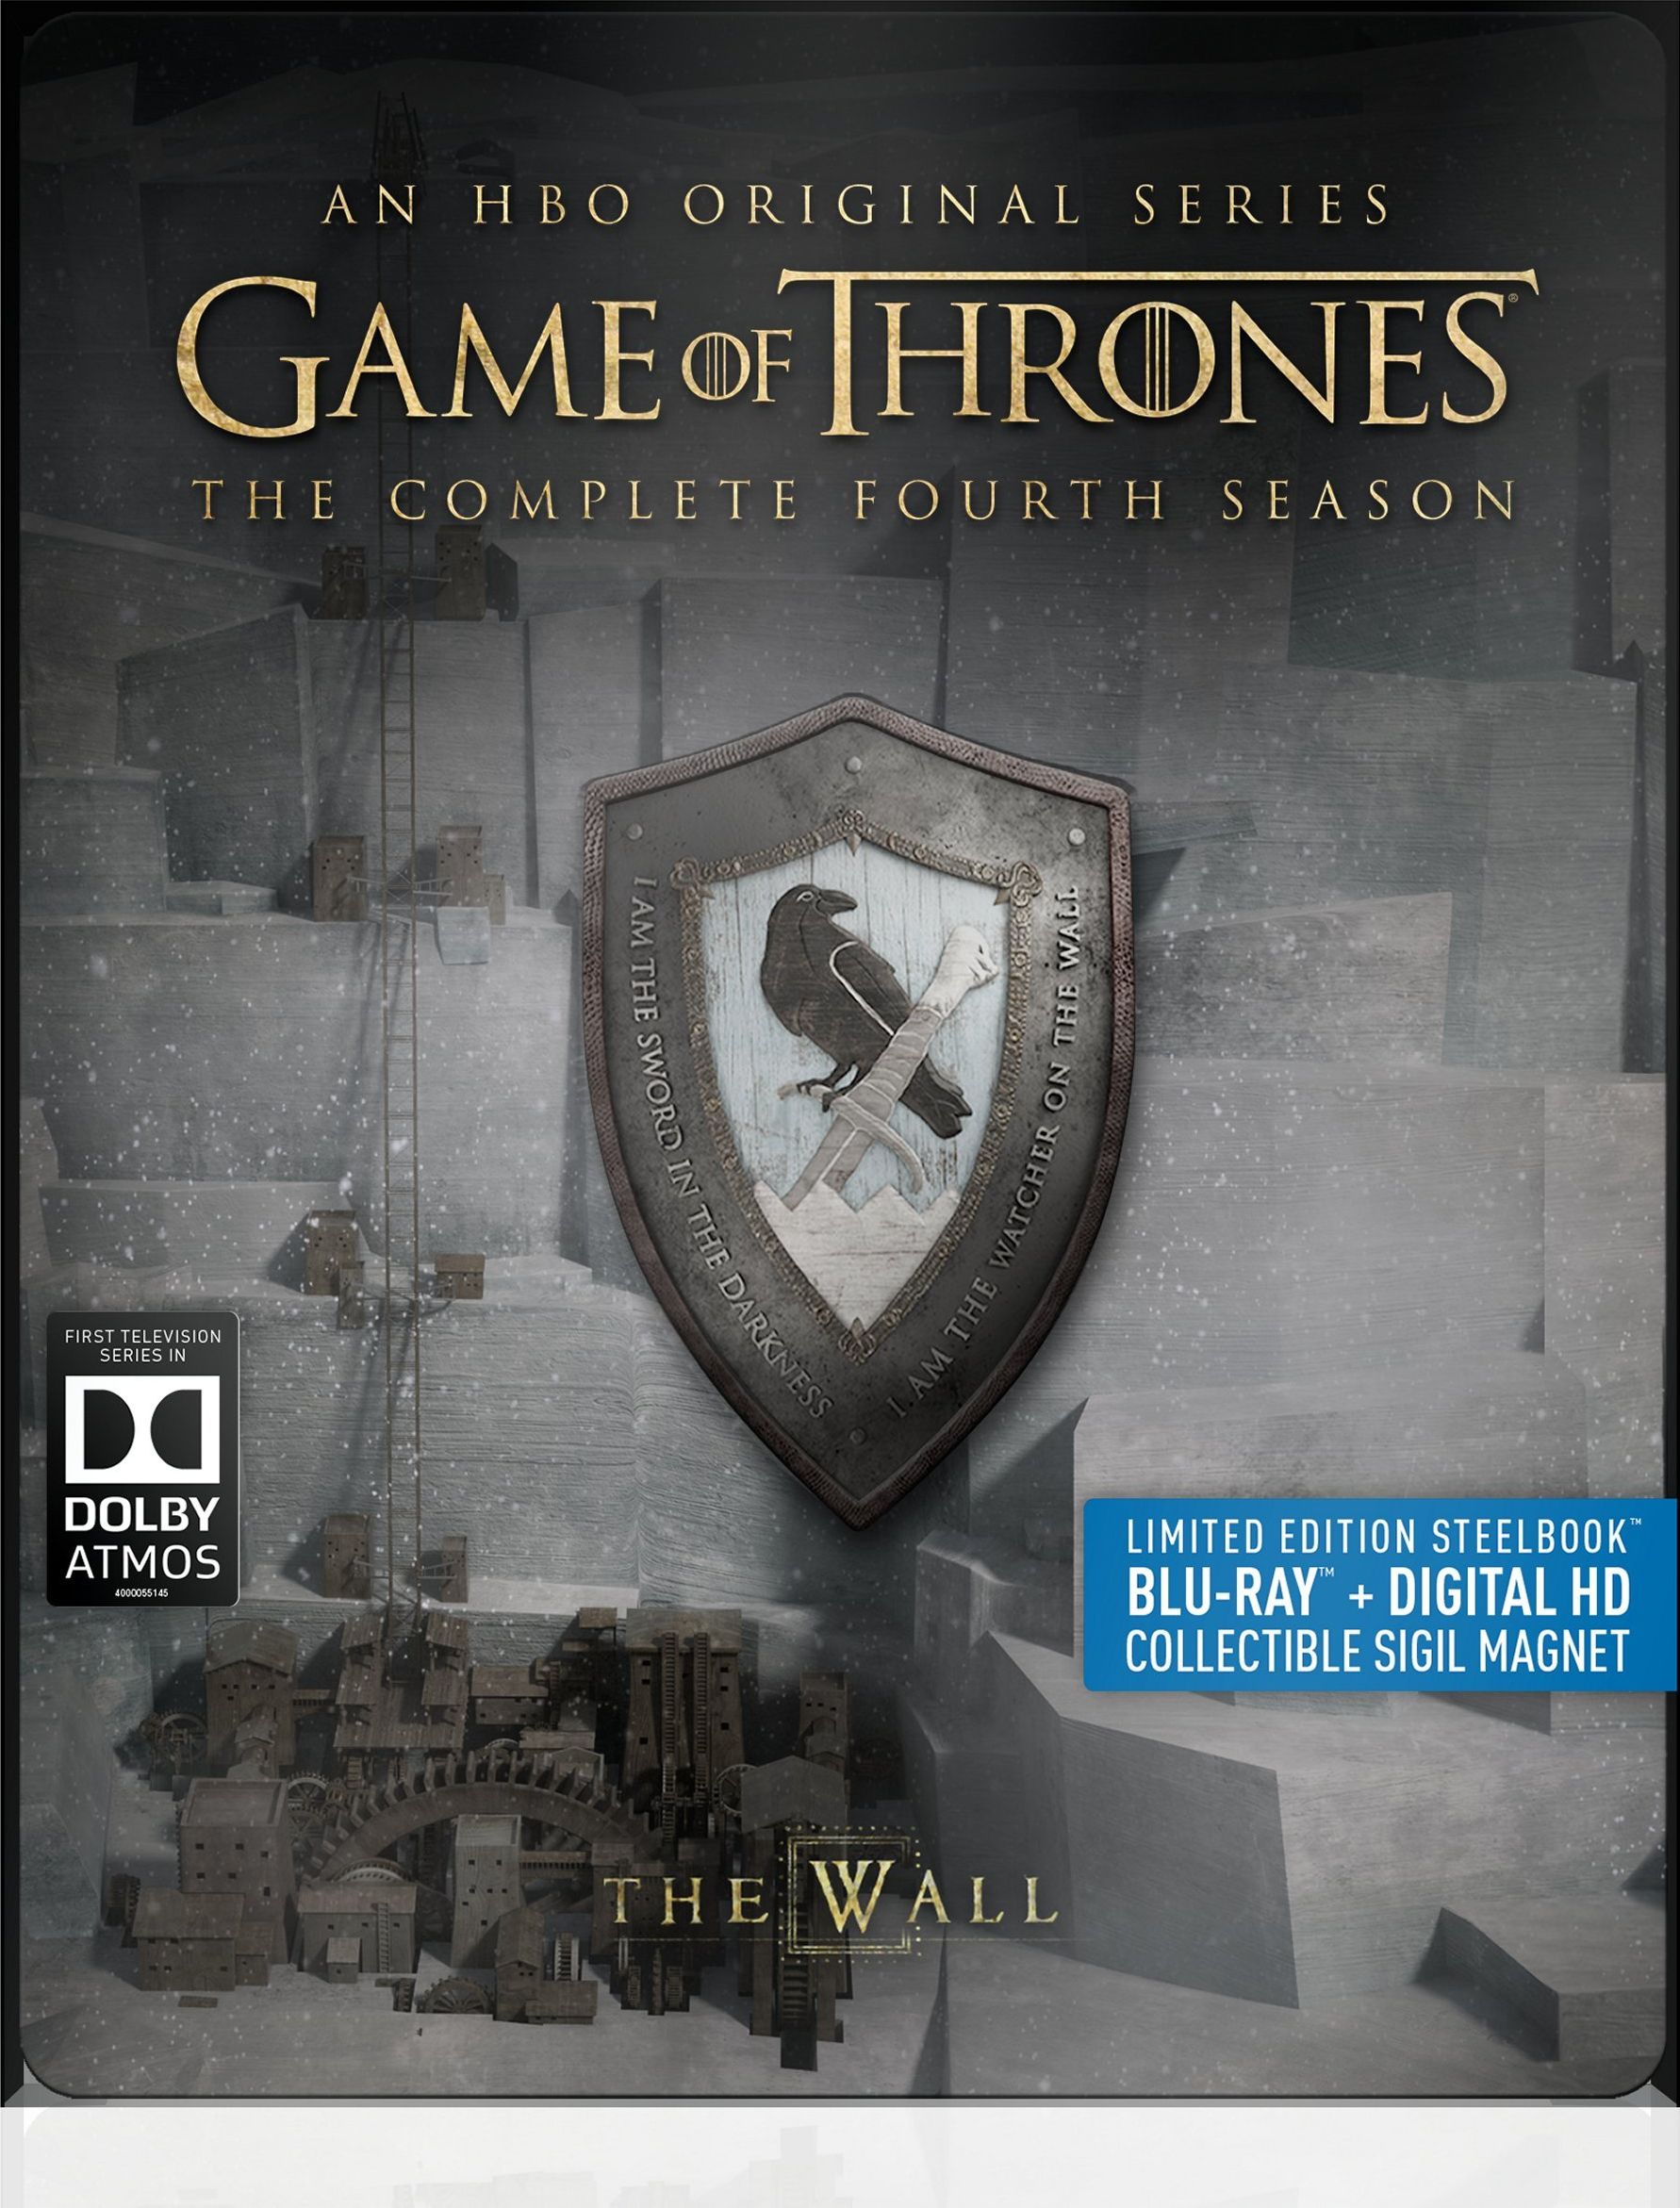 of Thrones DVD Release